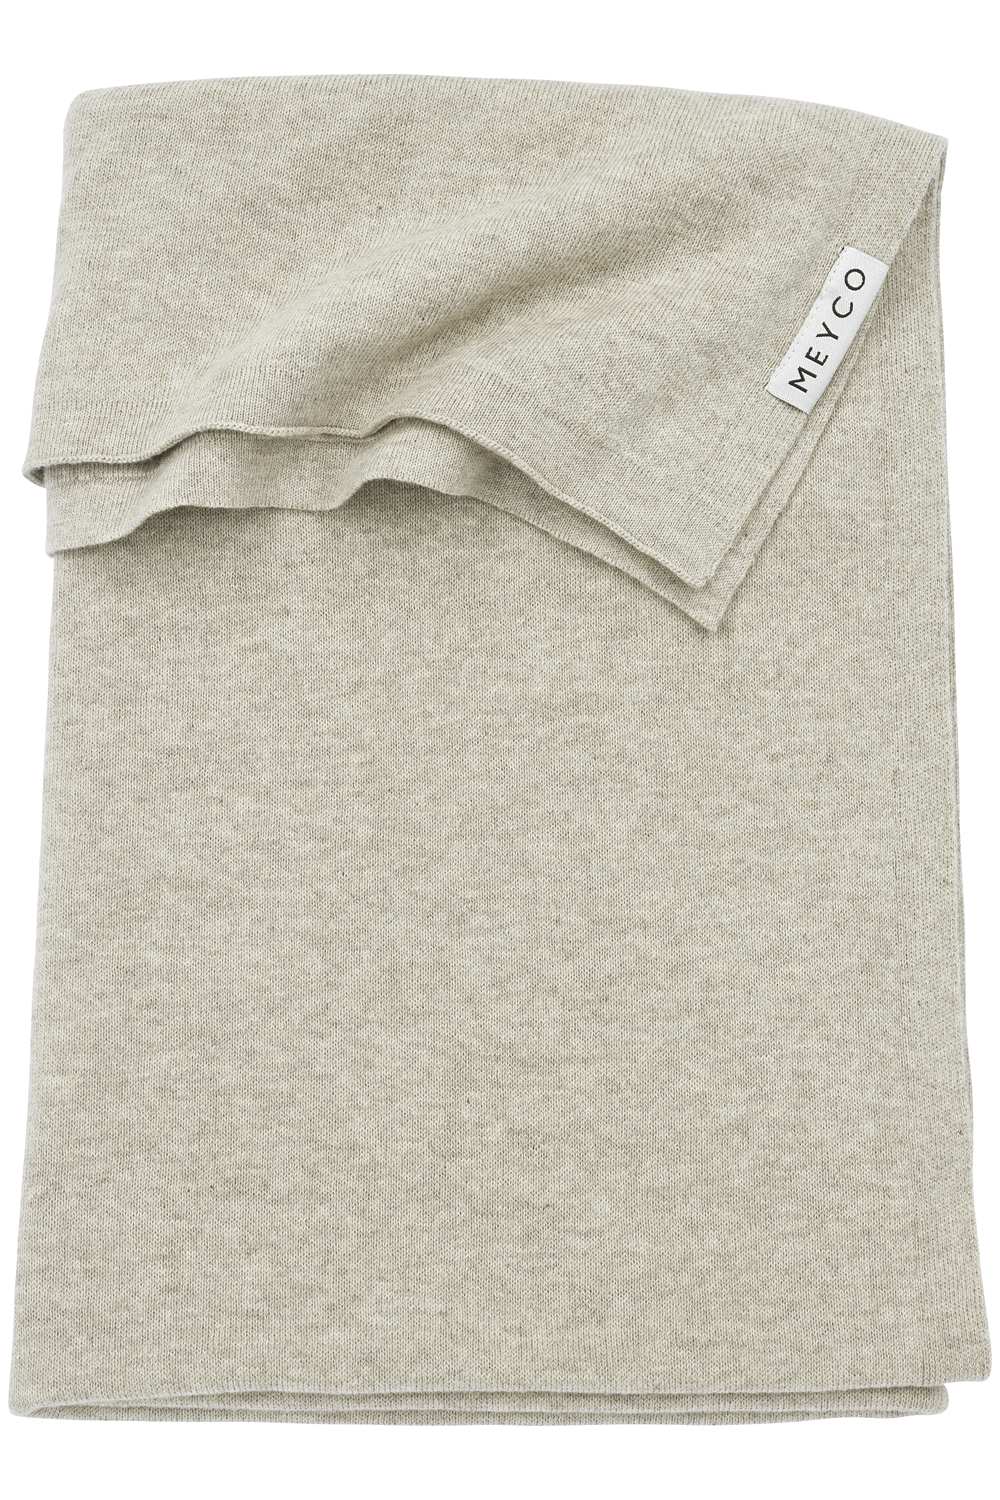 Cot bed blanket Knit Basic - sand melange - 100x150cm